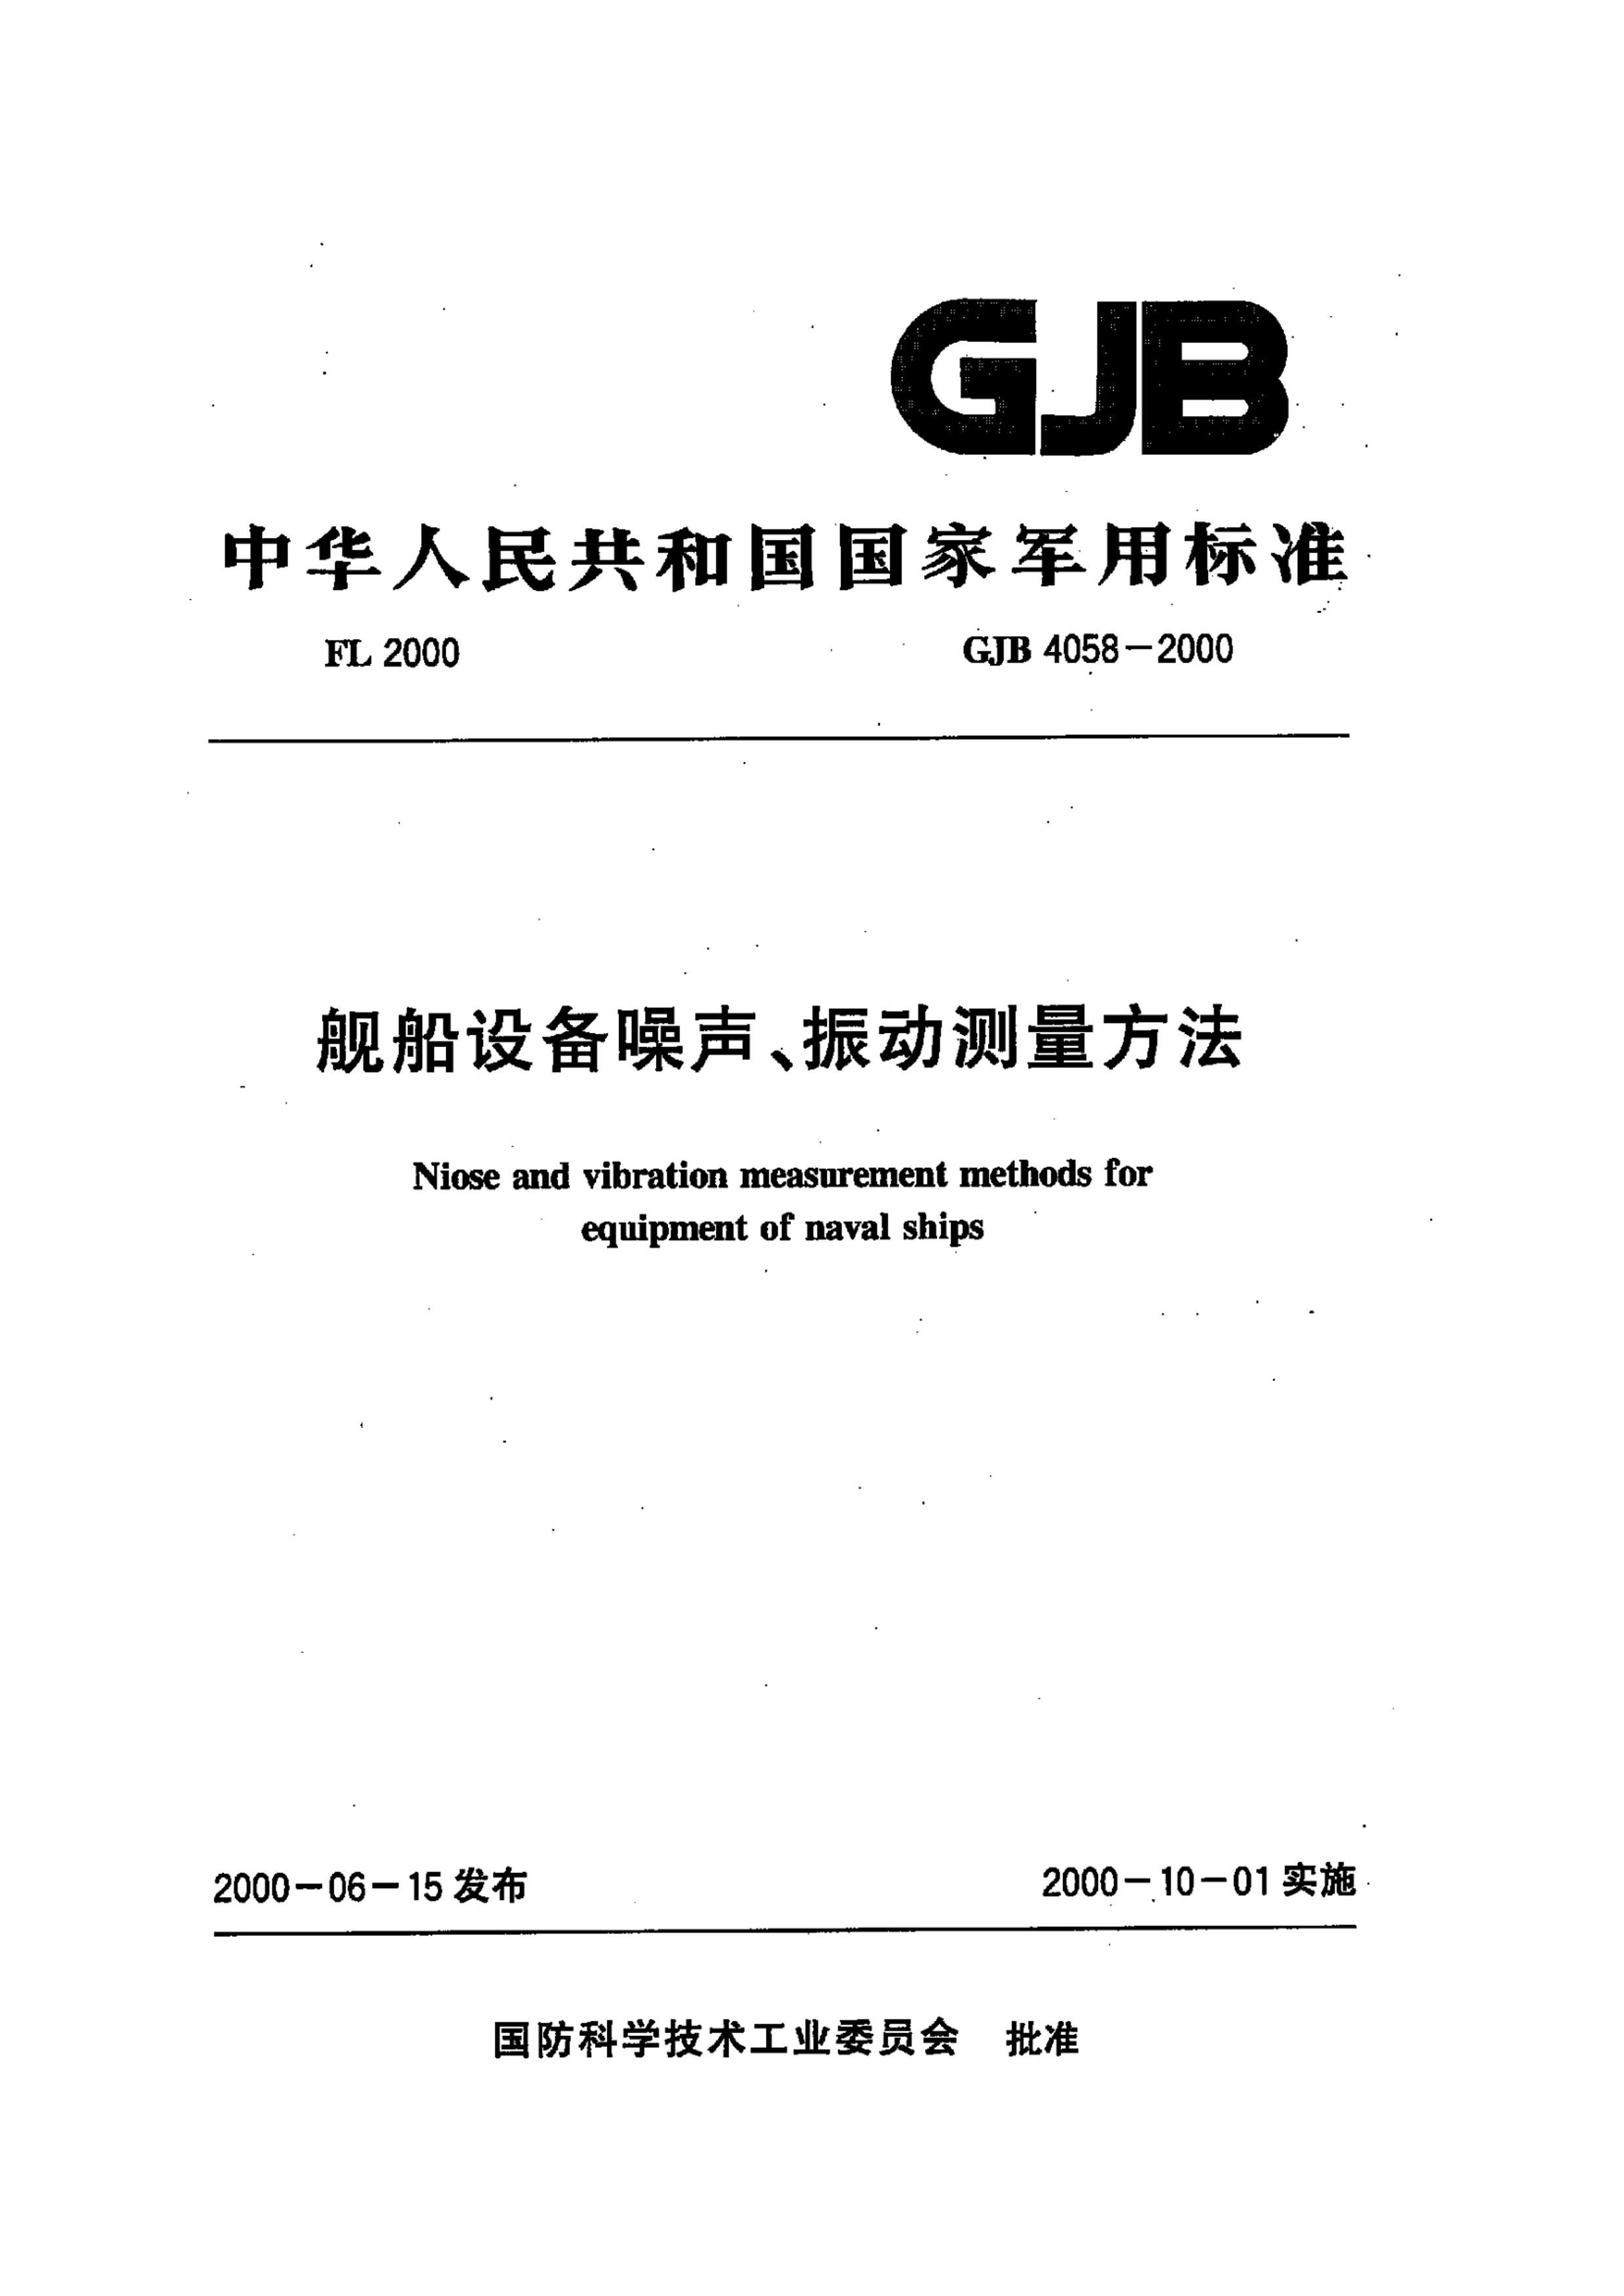 GJB 4058-2000 豸񶯲.pdf1ҳ